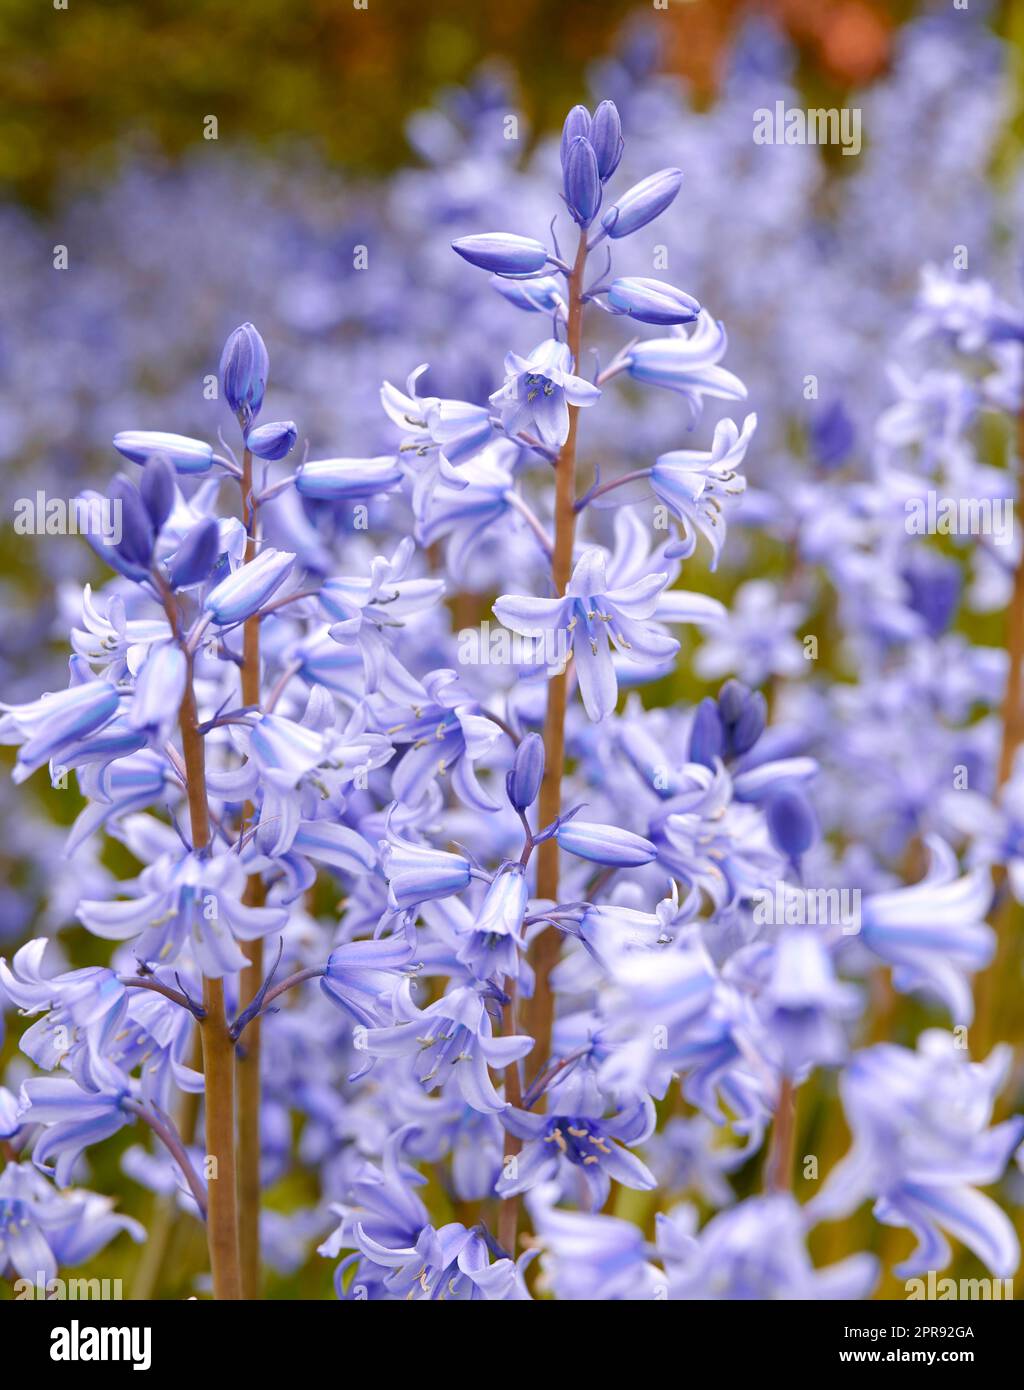 Spanische Blauzungenblüten, eine Art von Hyacinthoiden, blühen und blühen auf einem Feld oder im botanischen Garten draußen. Wilde blühende Pflanzen, die im Freien gedeihen und zur Gartendekoration verwendet werden Stockfoto